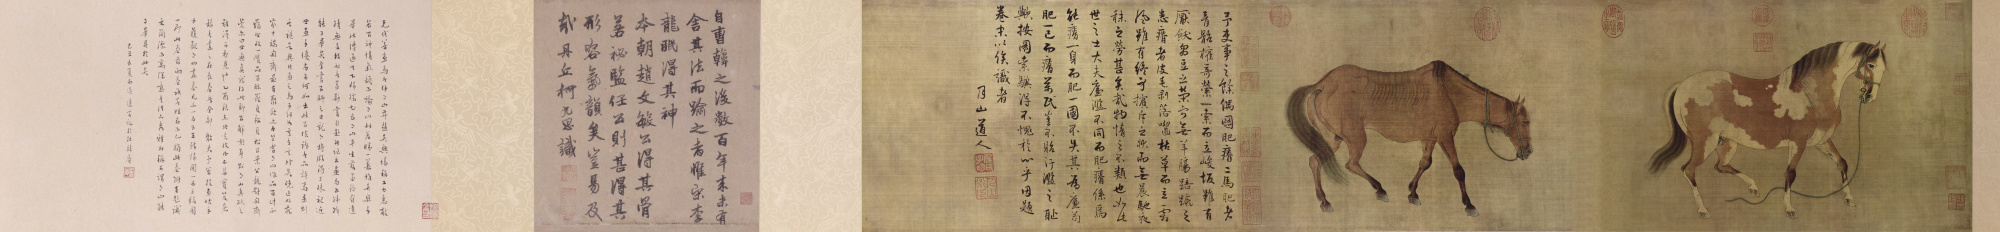 元 任仁发 二马图（全卷）绢本28.8x142.7北京.tif
